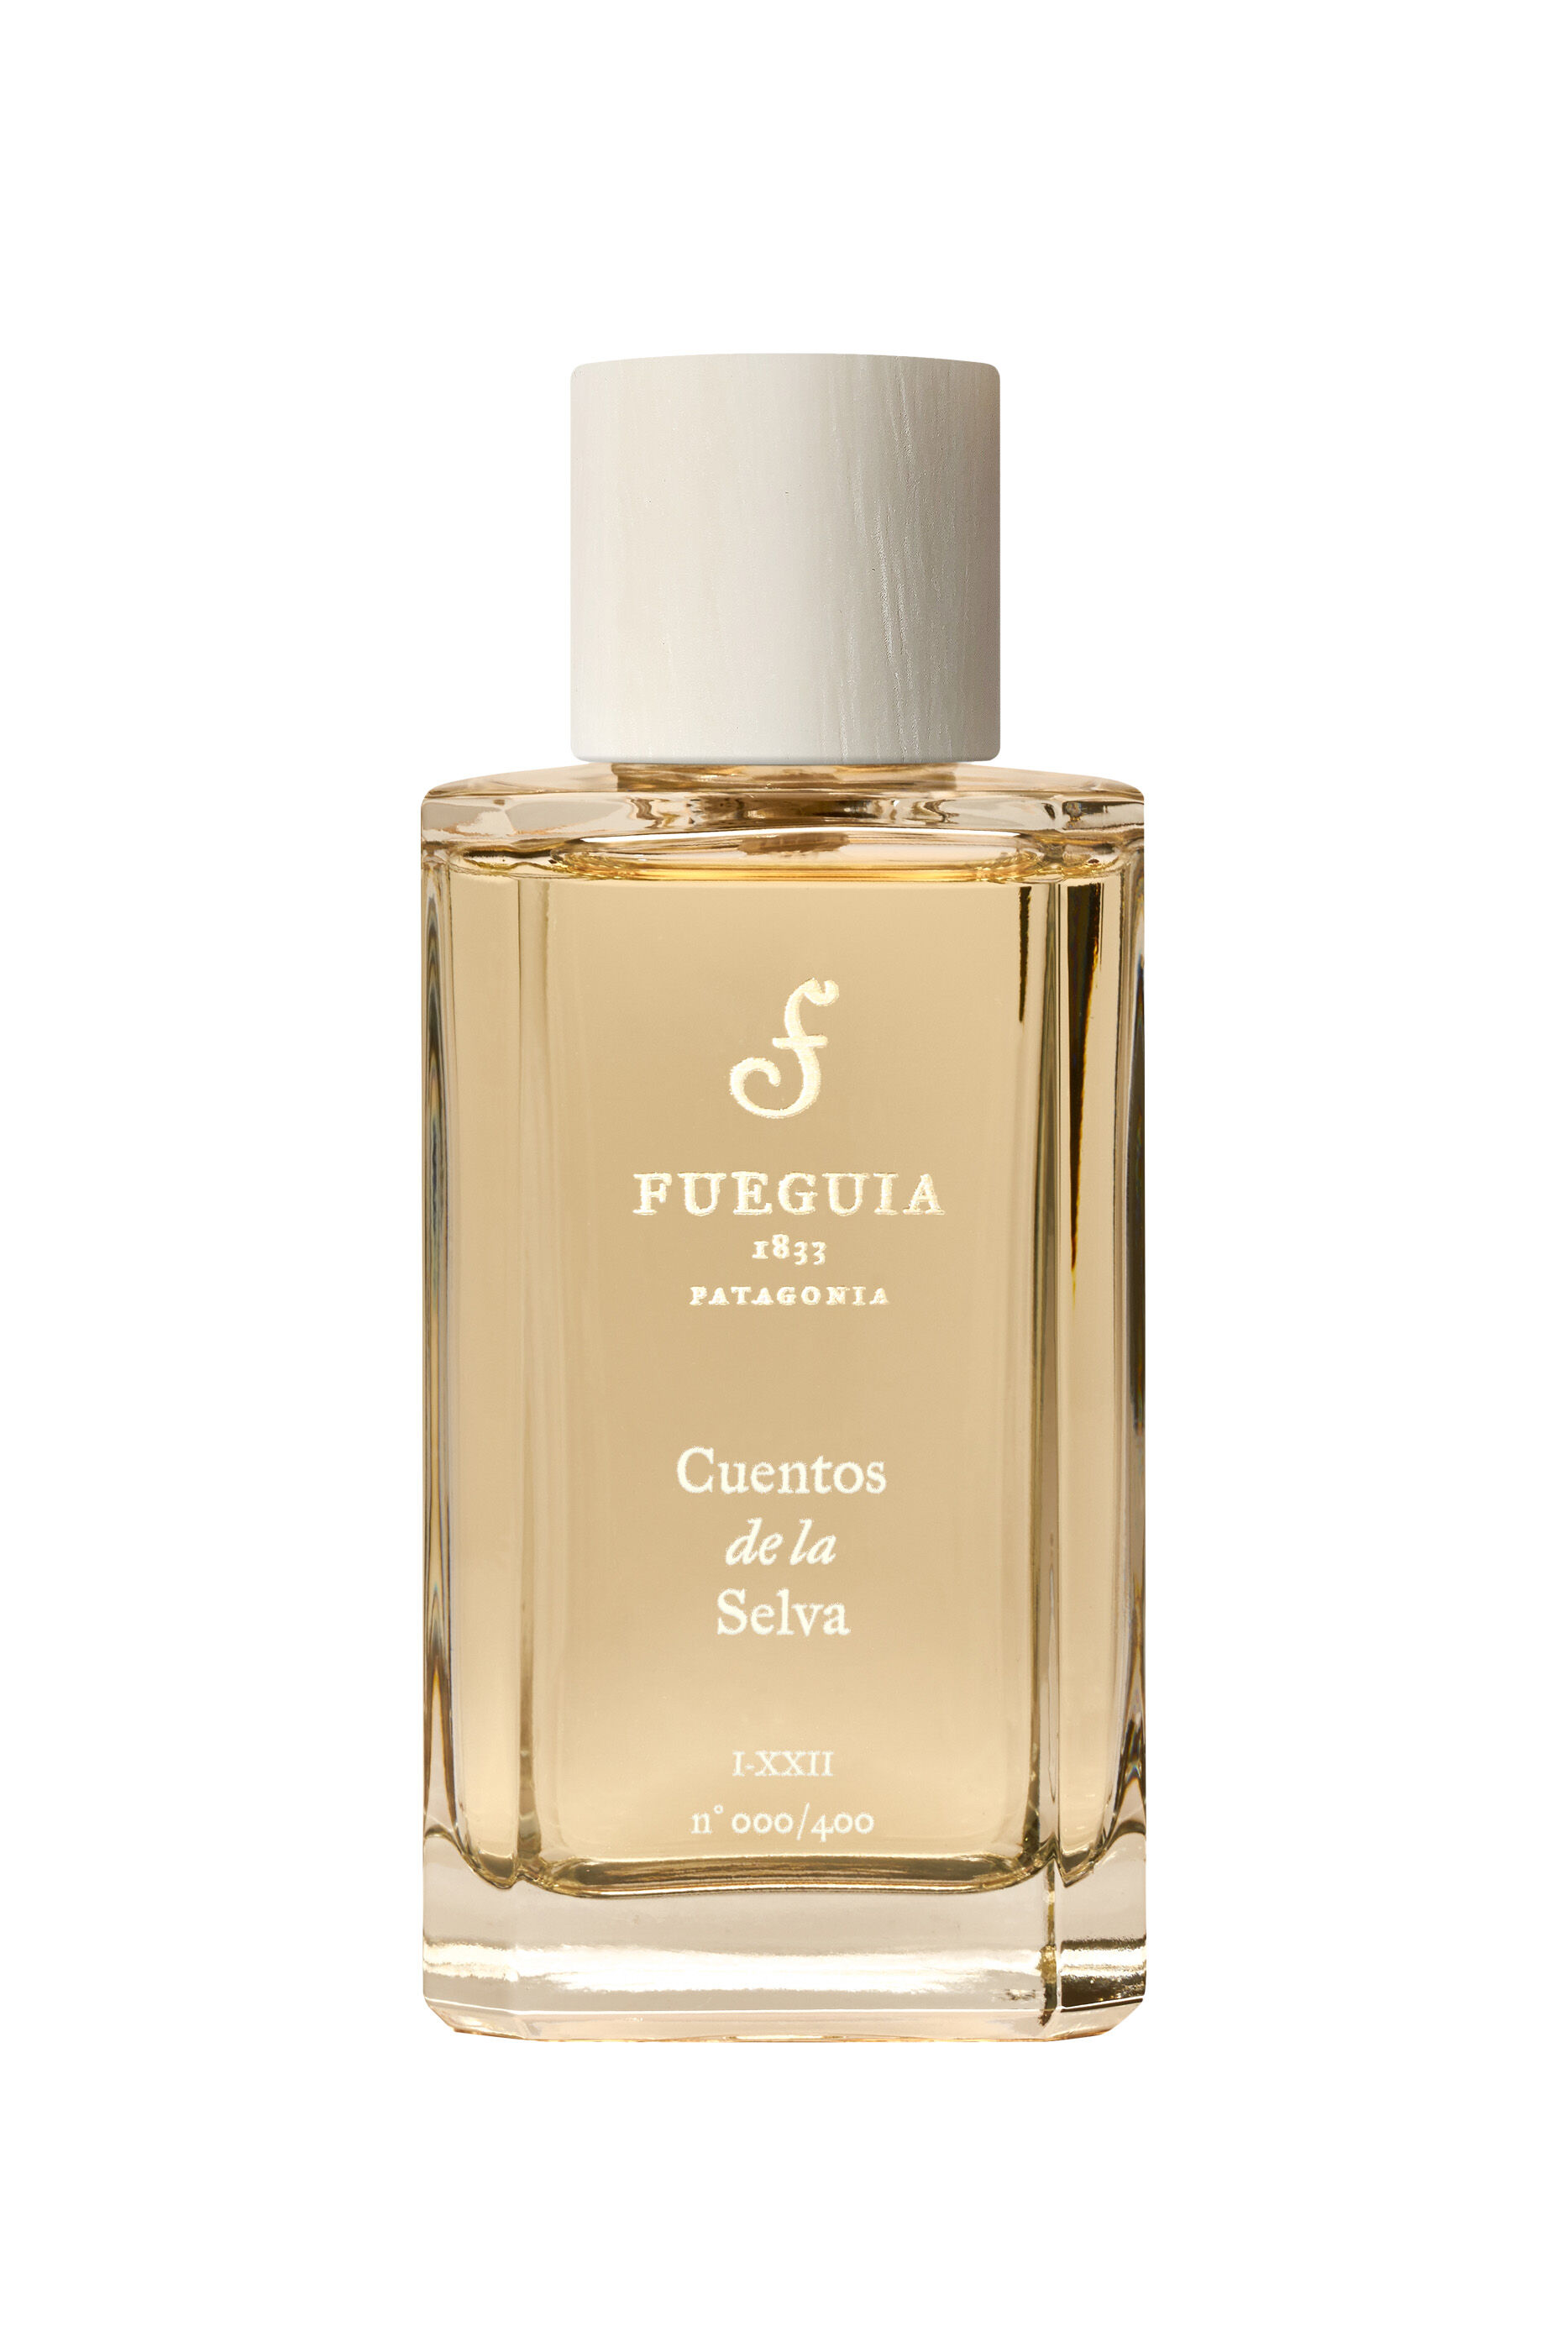 Buy Fueguia 1833 Cuentos de la Selva Perfume for